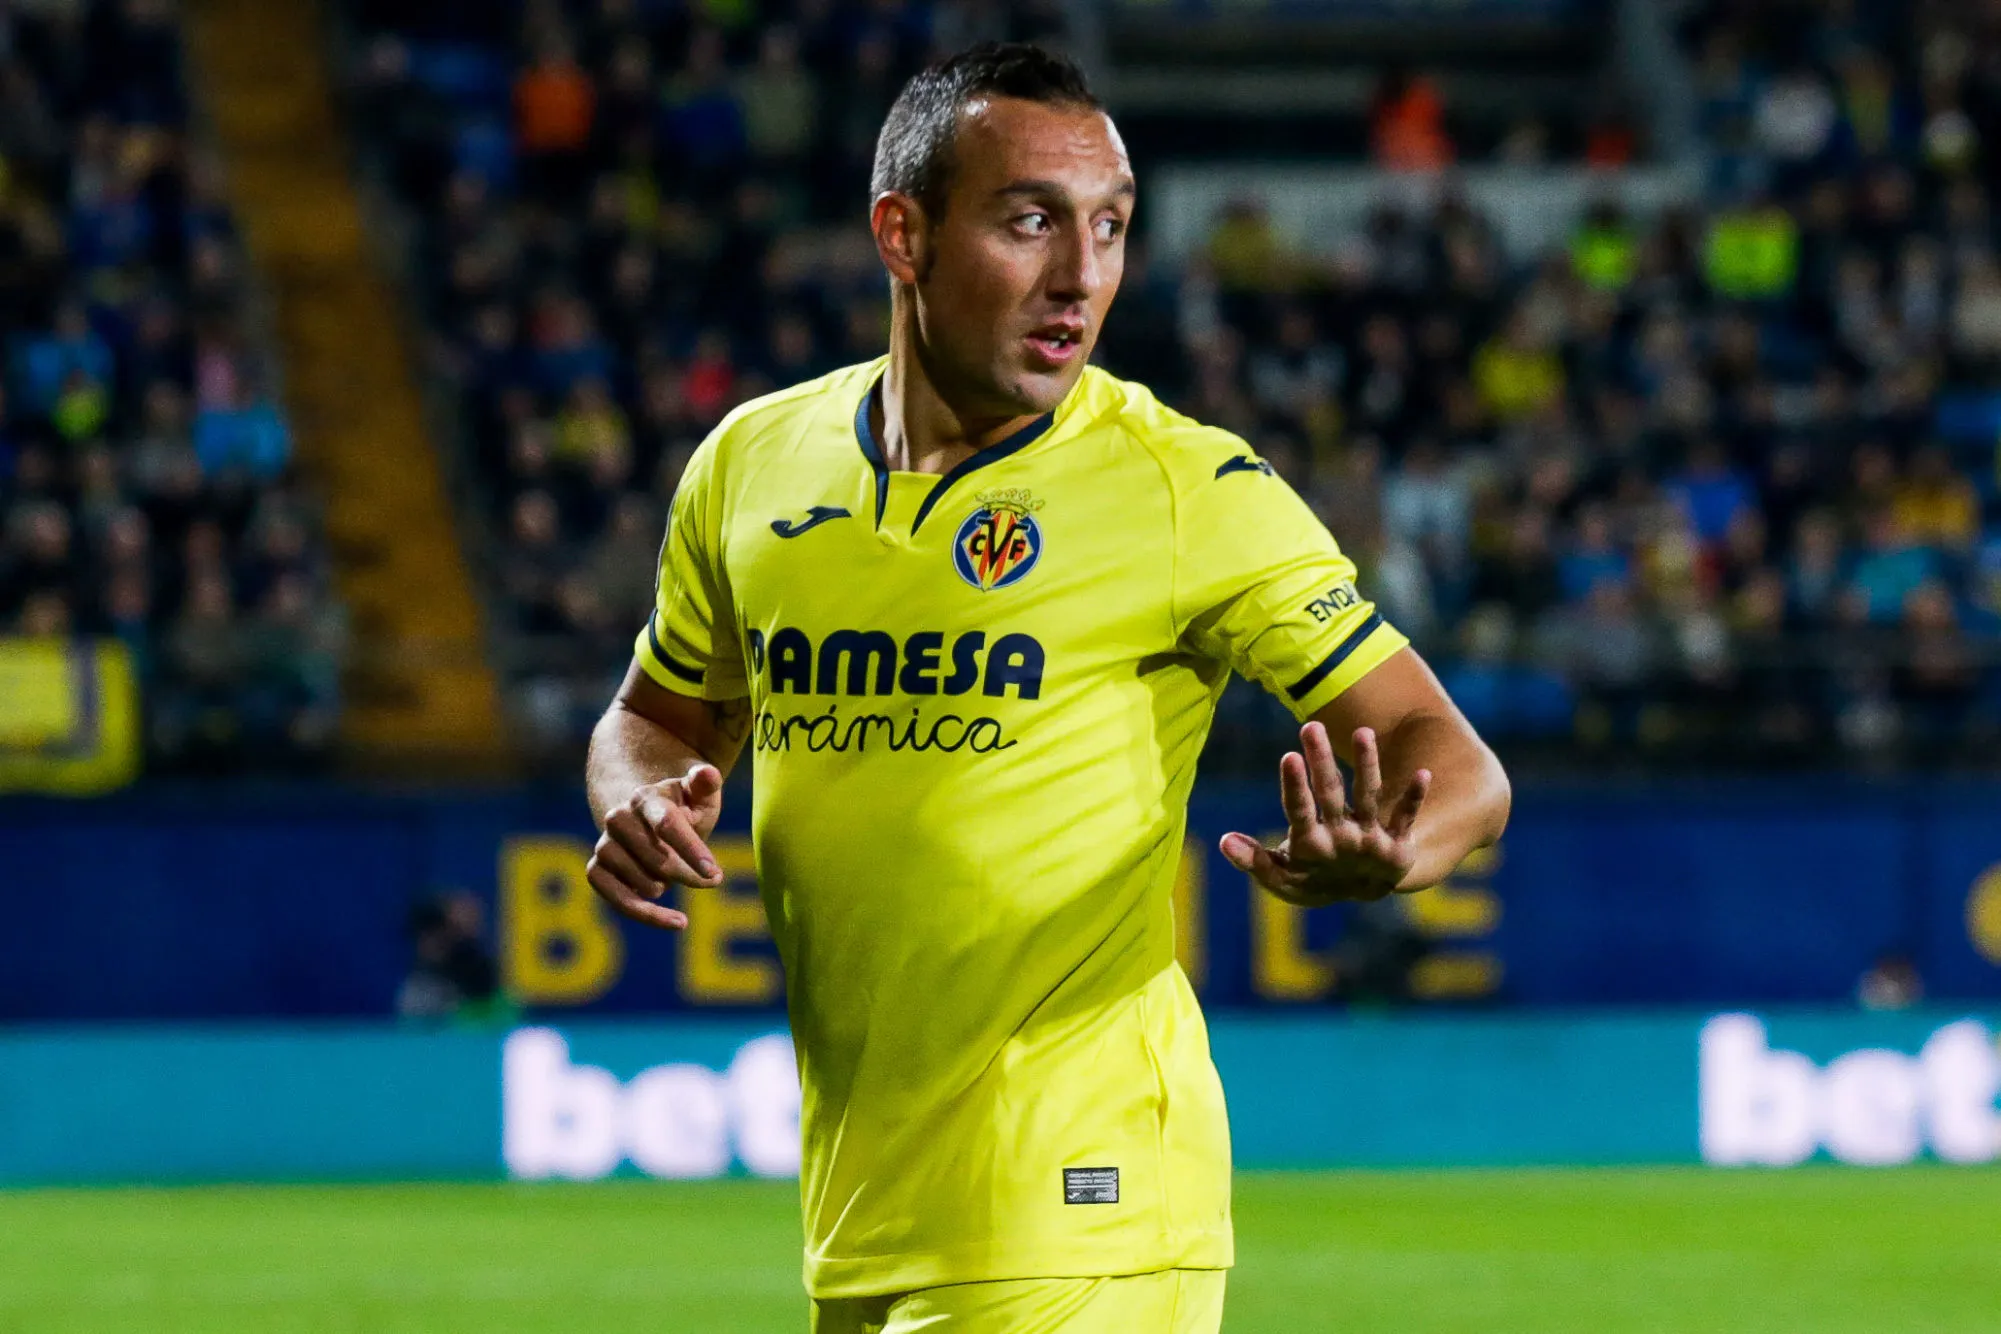 Pronostic Villarreal Real Sociedad : Analyse, prono et cotes du match de Liga